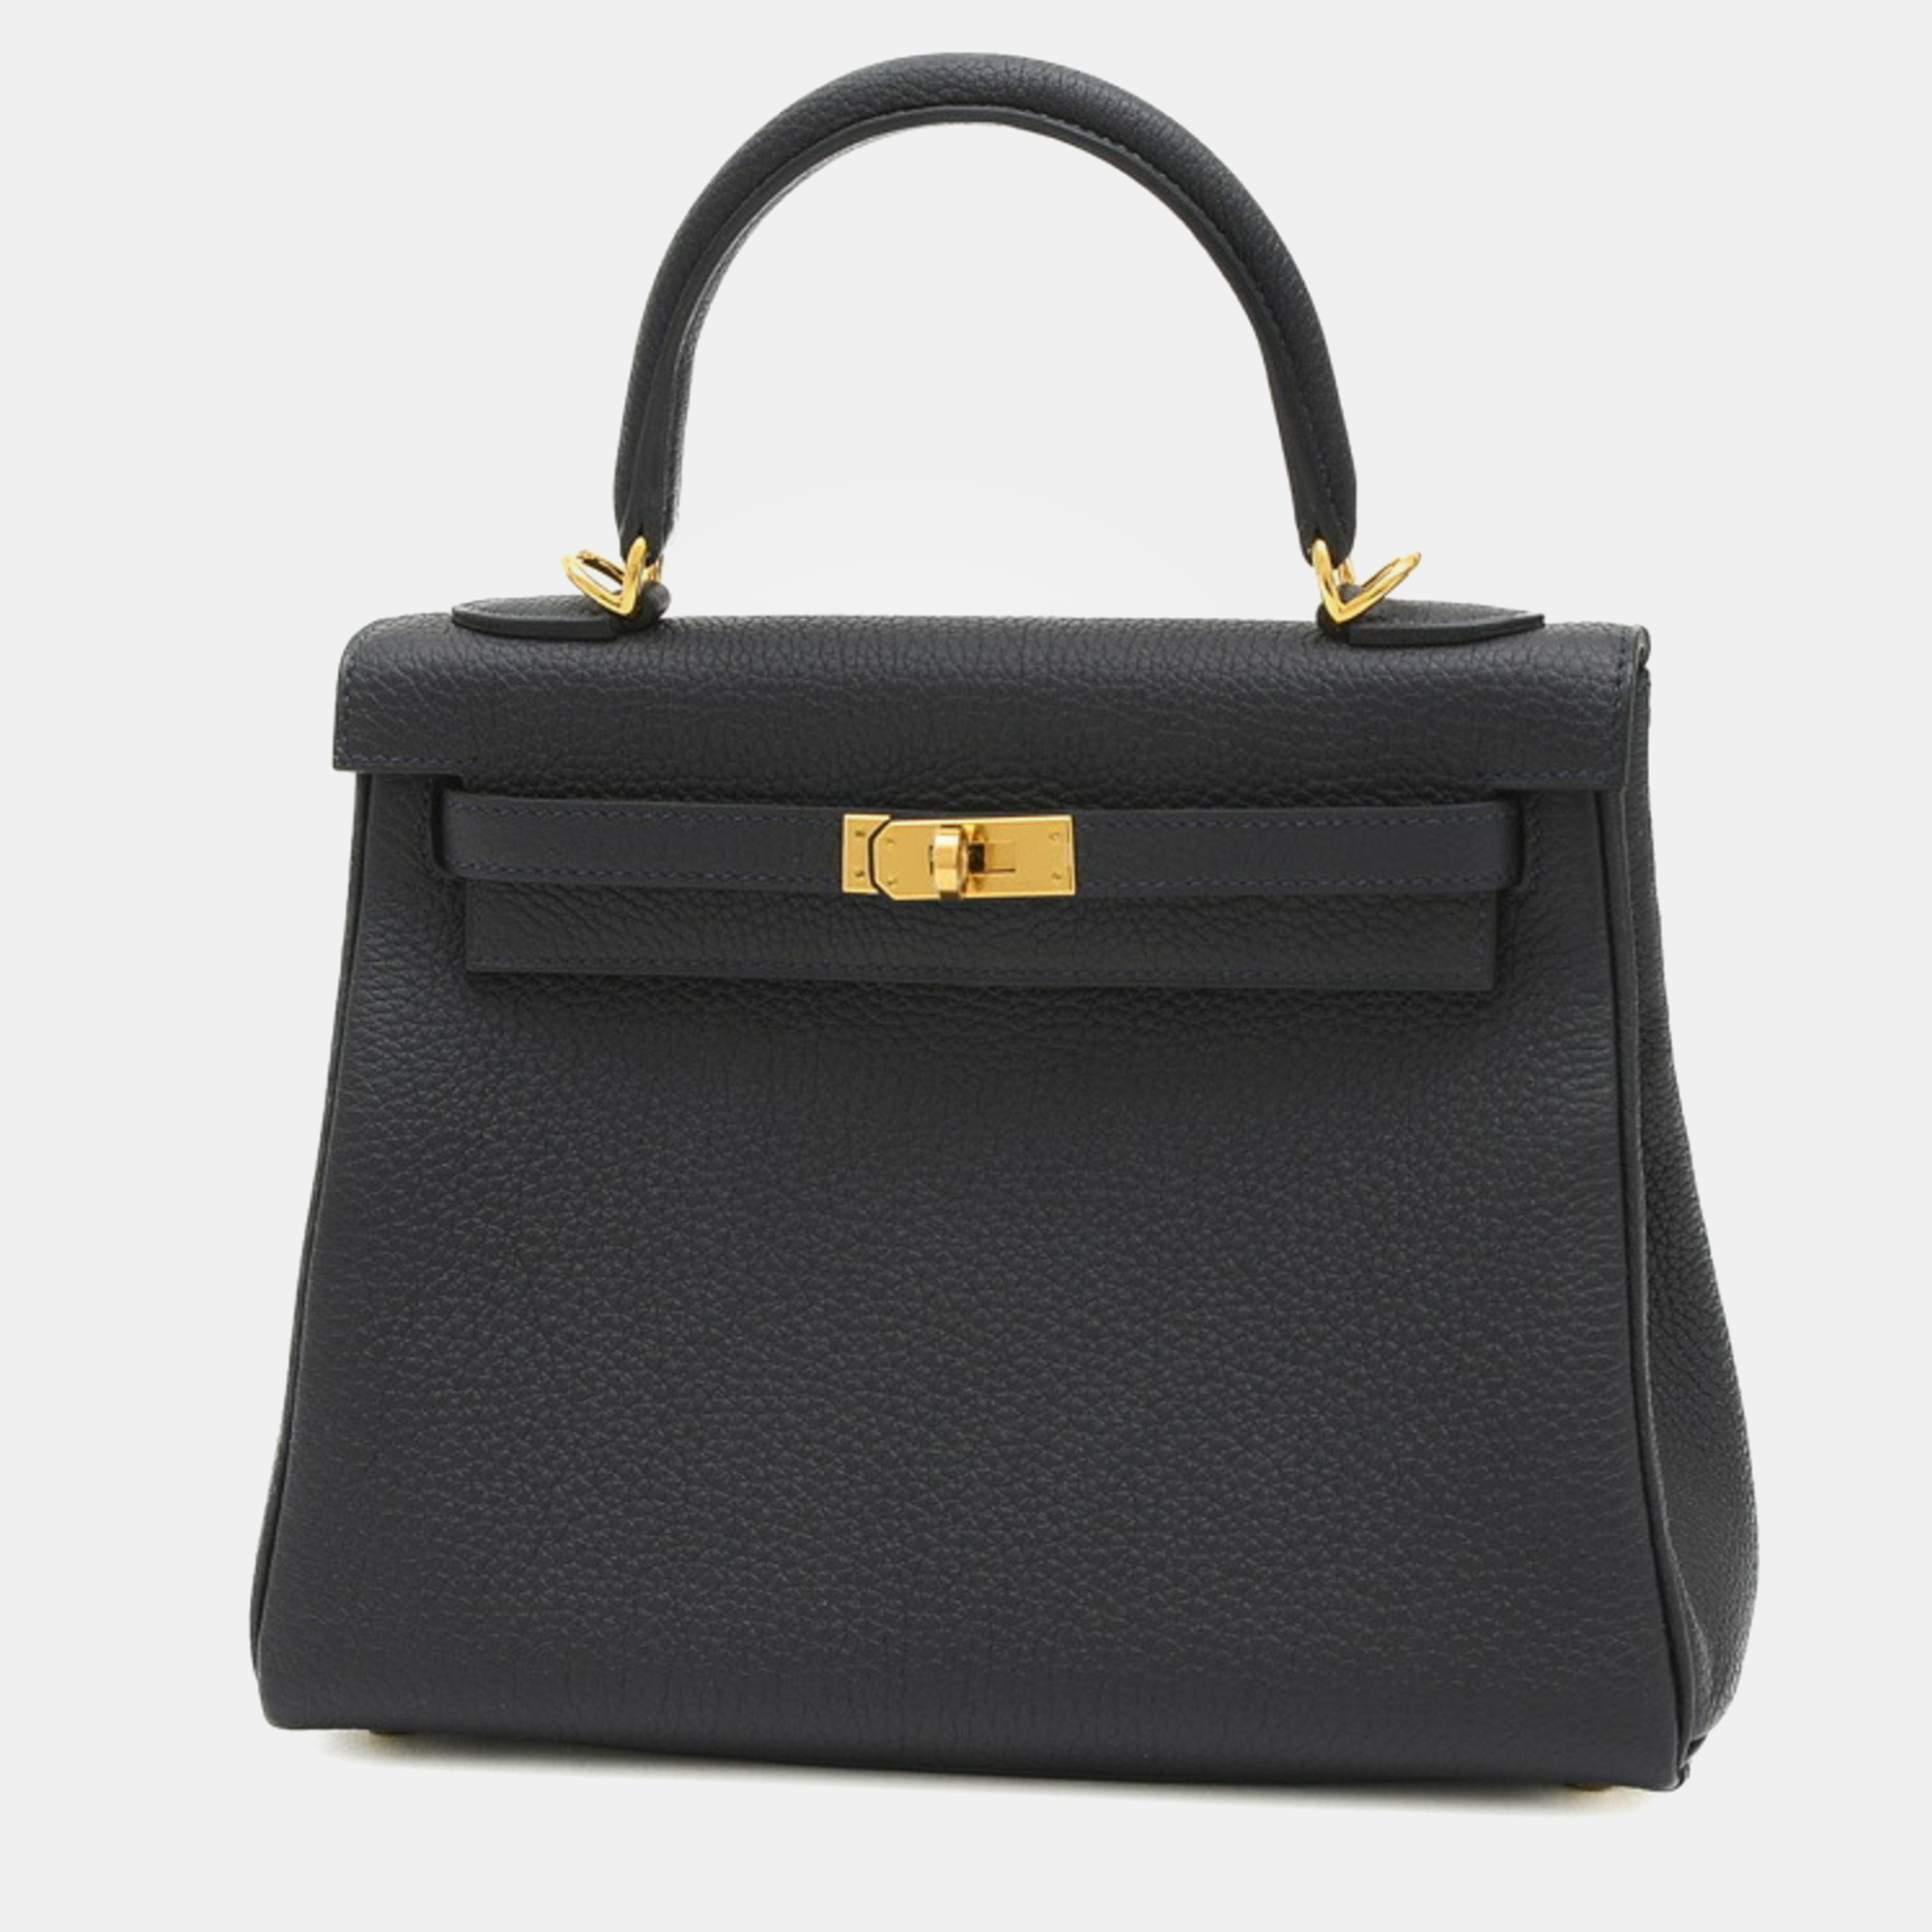 Pre-owned Hermes Togo Cavan B Engraved Kelly Handbag In Black